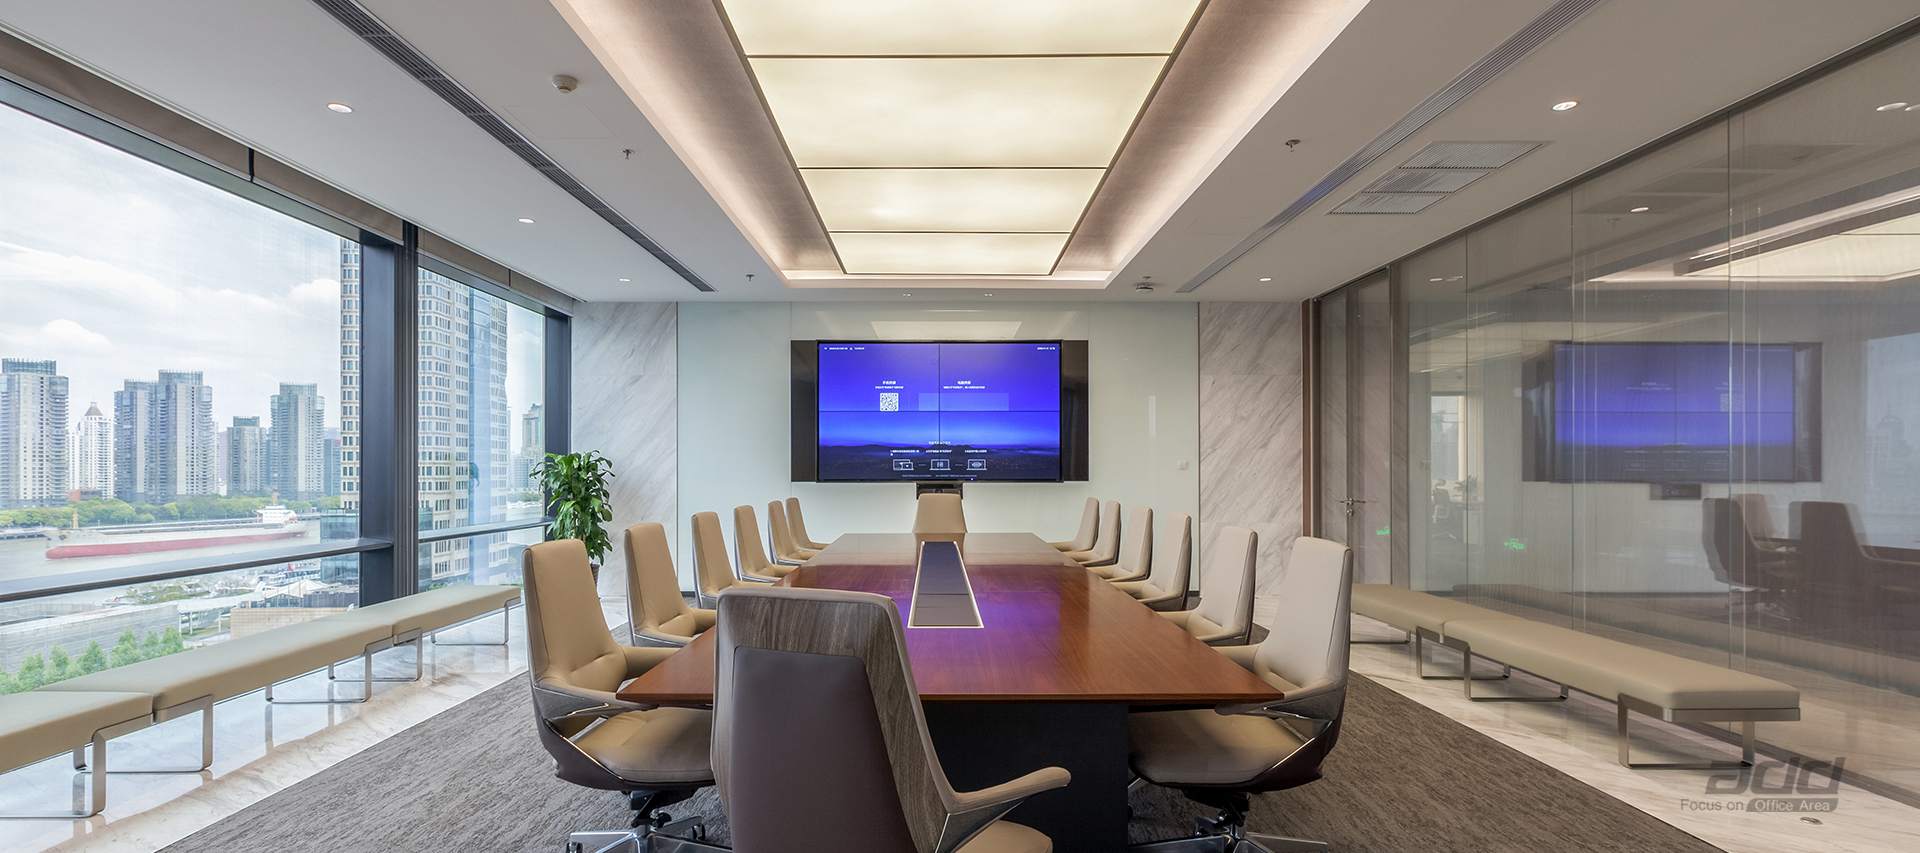 德邦證券辦公樓裝修設計-會議室-pc